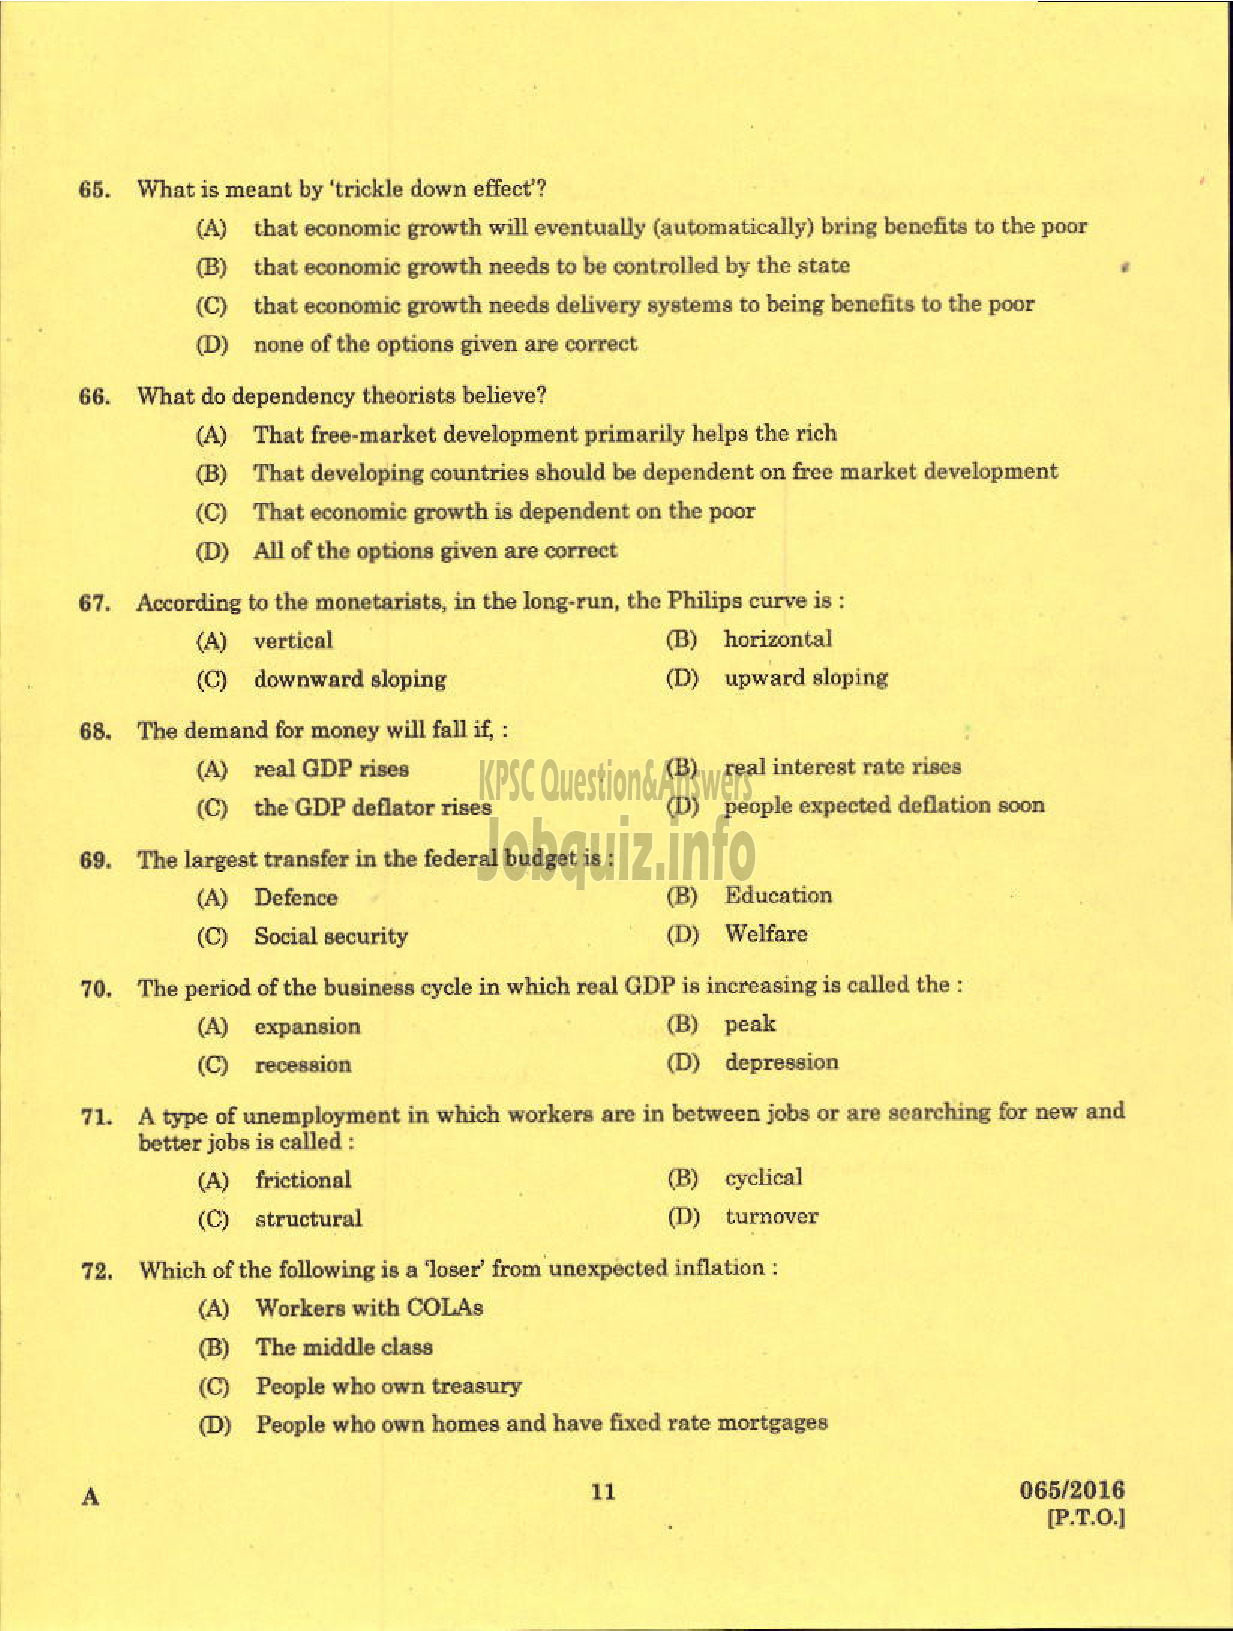 Kerala PSC Question Paper - LECTURER GR I I RURAL ECONOMICS RURAL DEVELOPMENT LECTURER GR I I RURAL ECONOMICS RURAL DEVELOPMENT-9